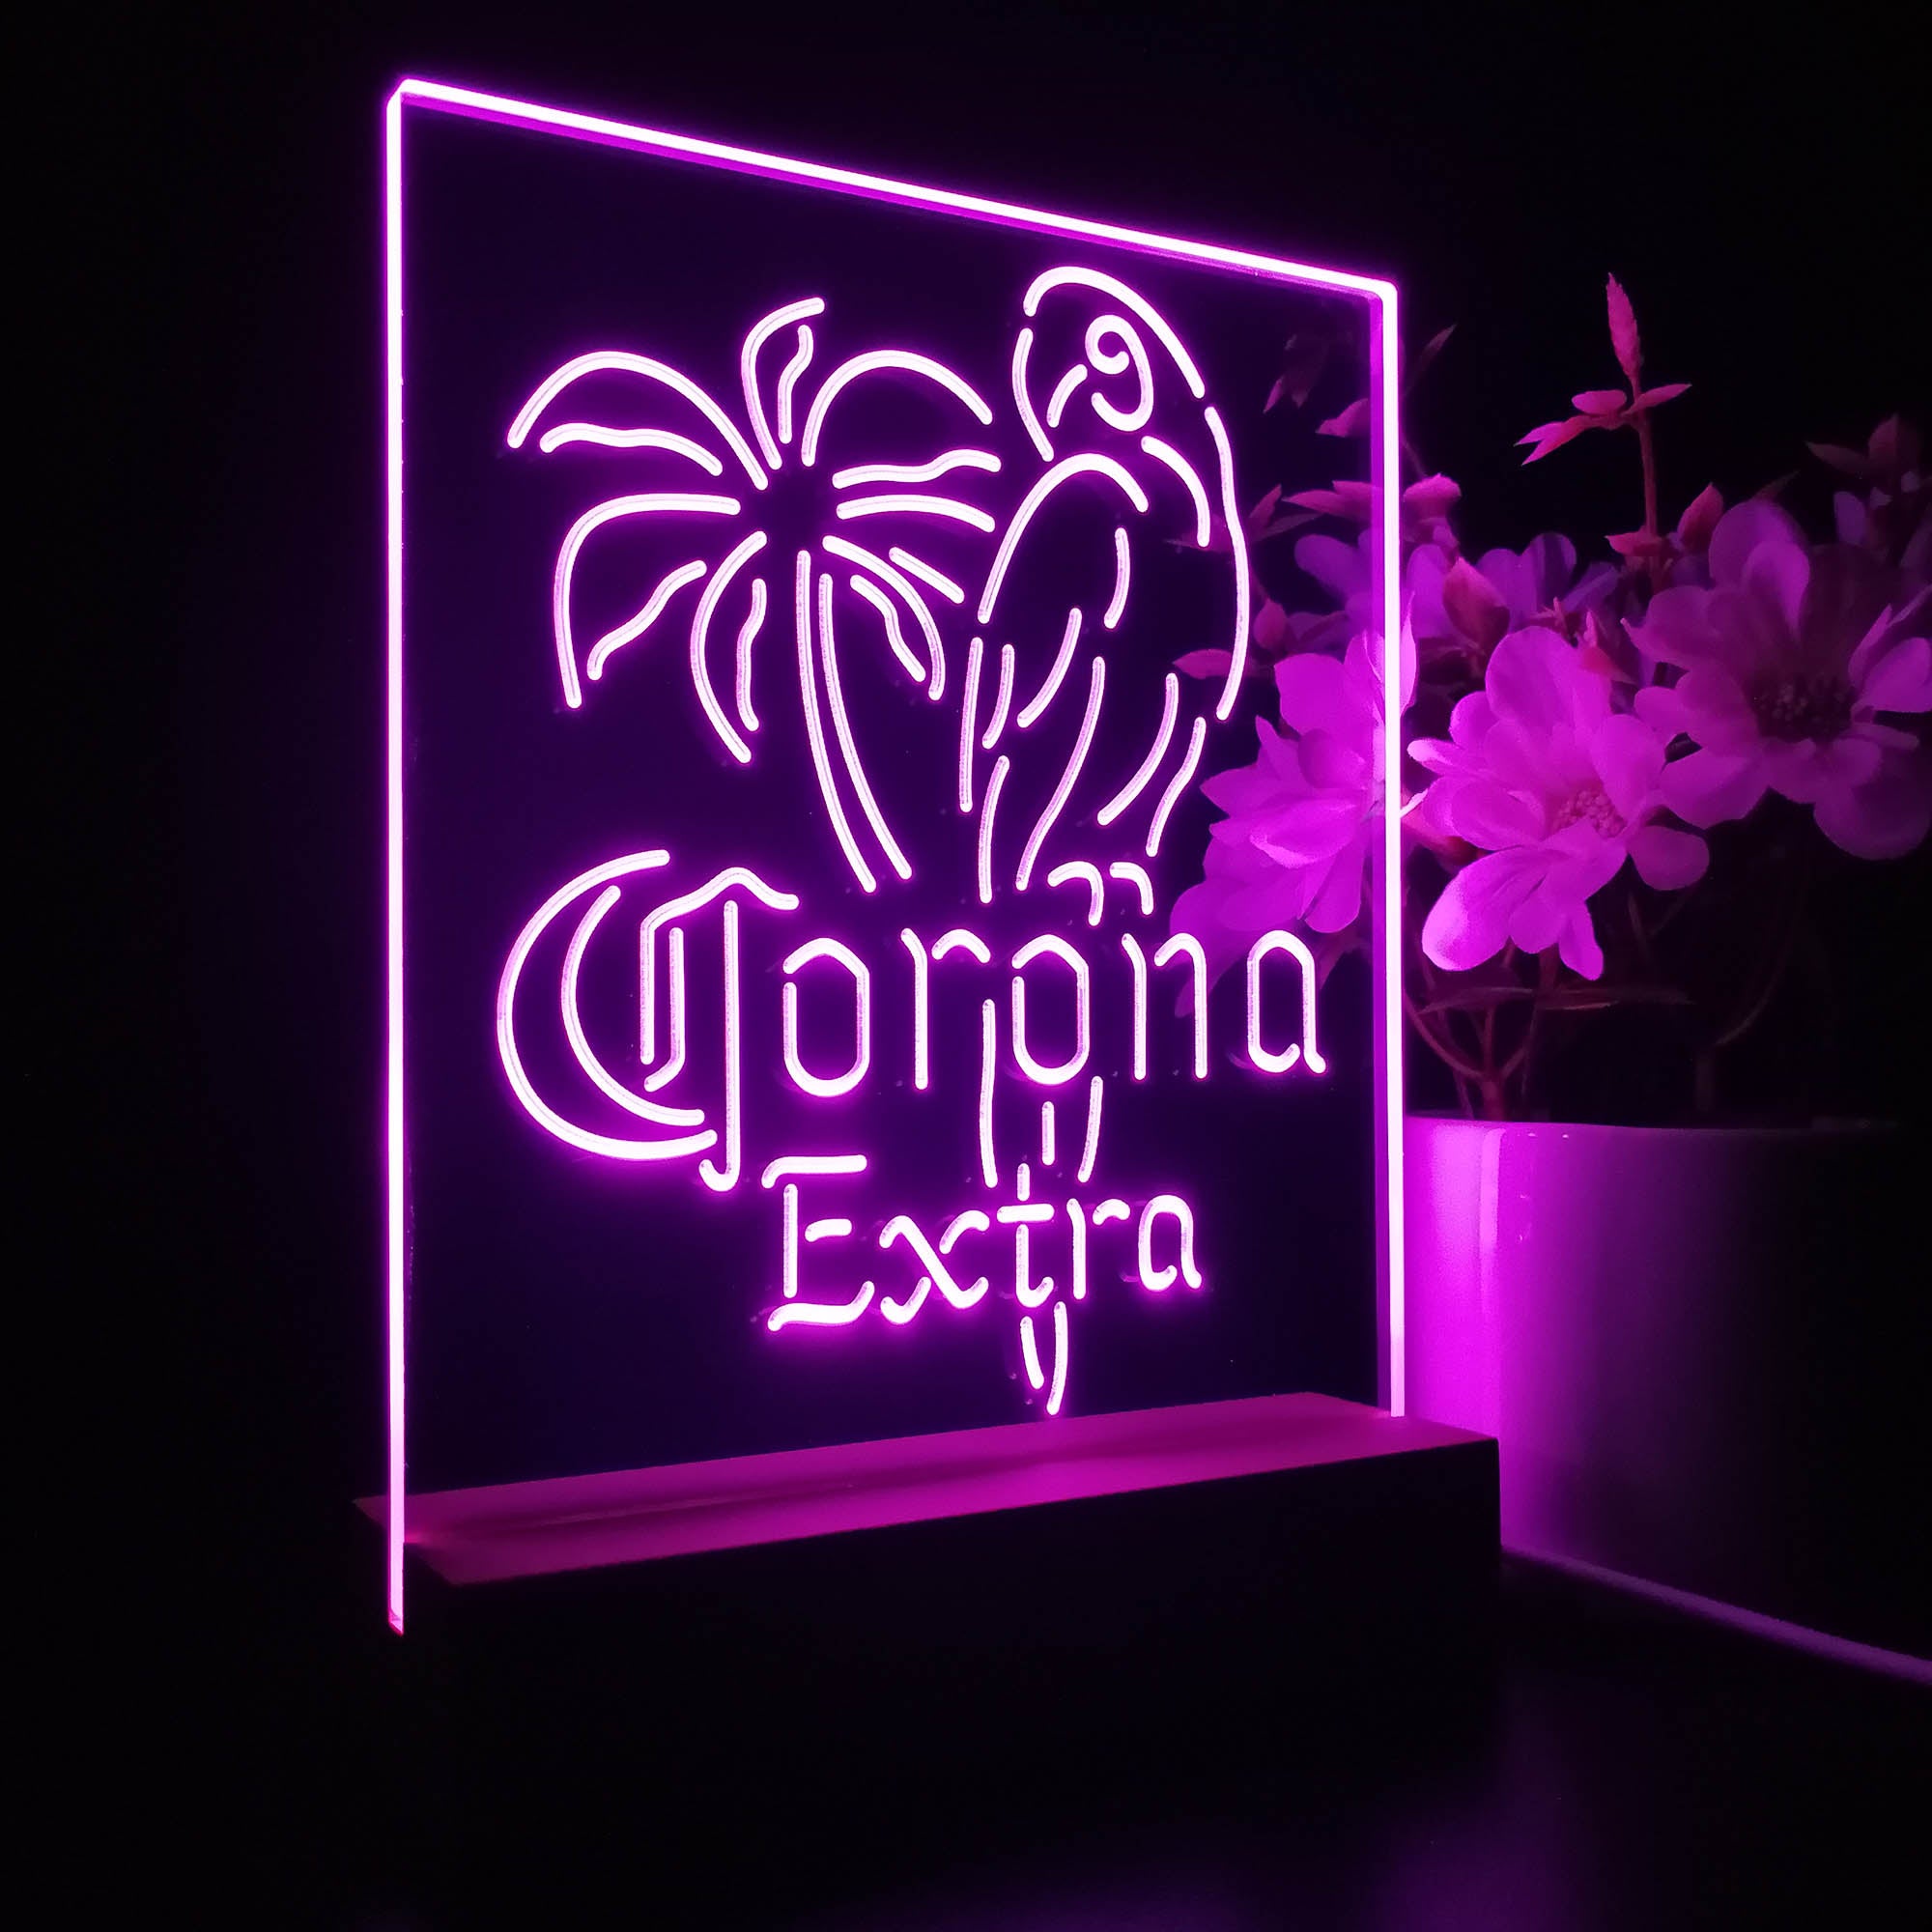 Corona Parrot Man Cave 3D LED Optical Illusion Night Light Table Lamp